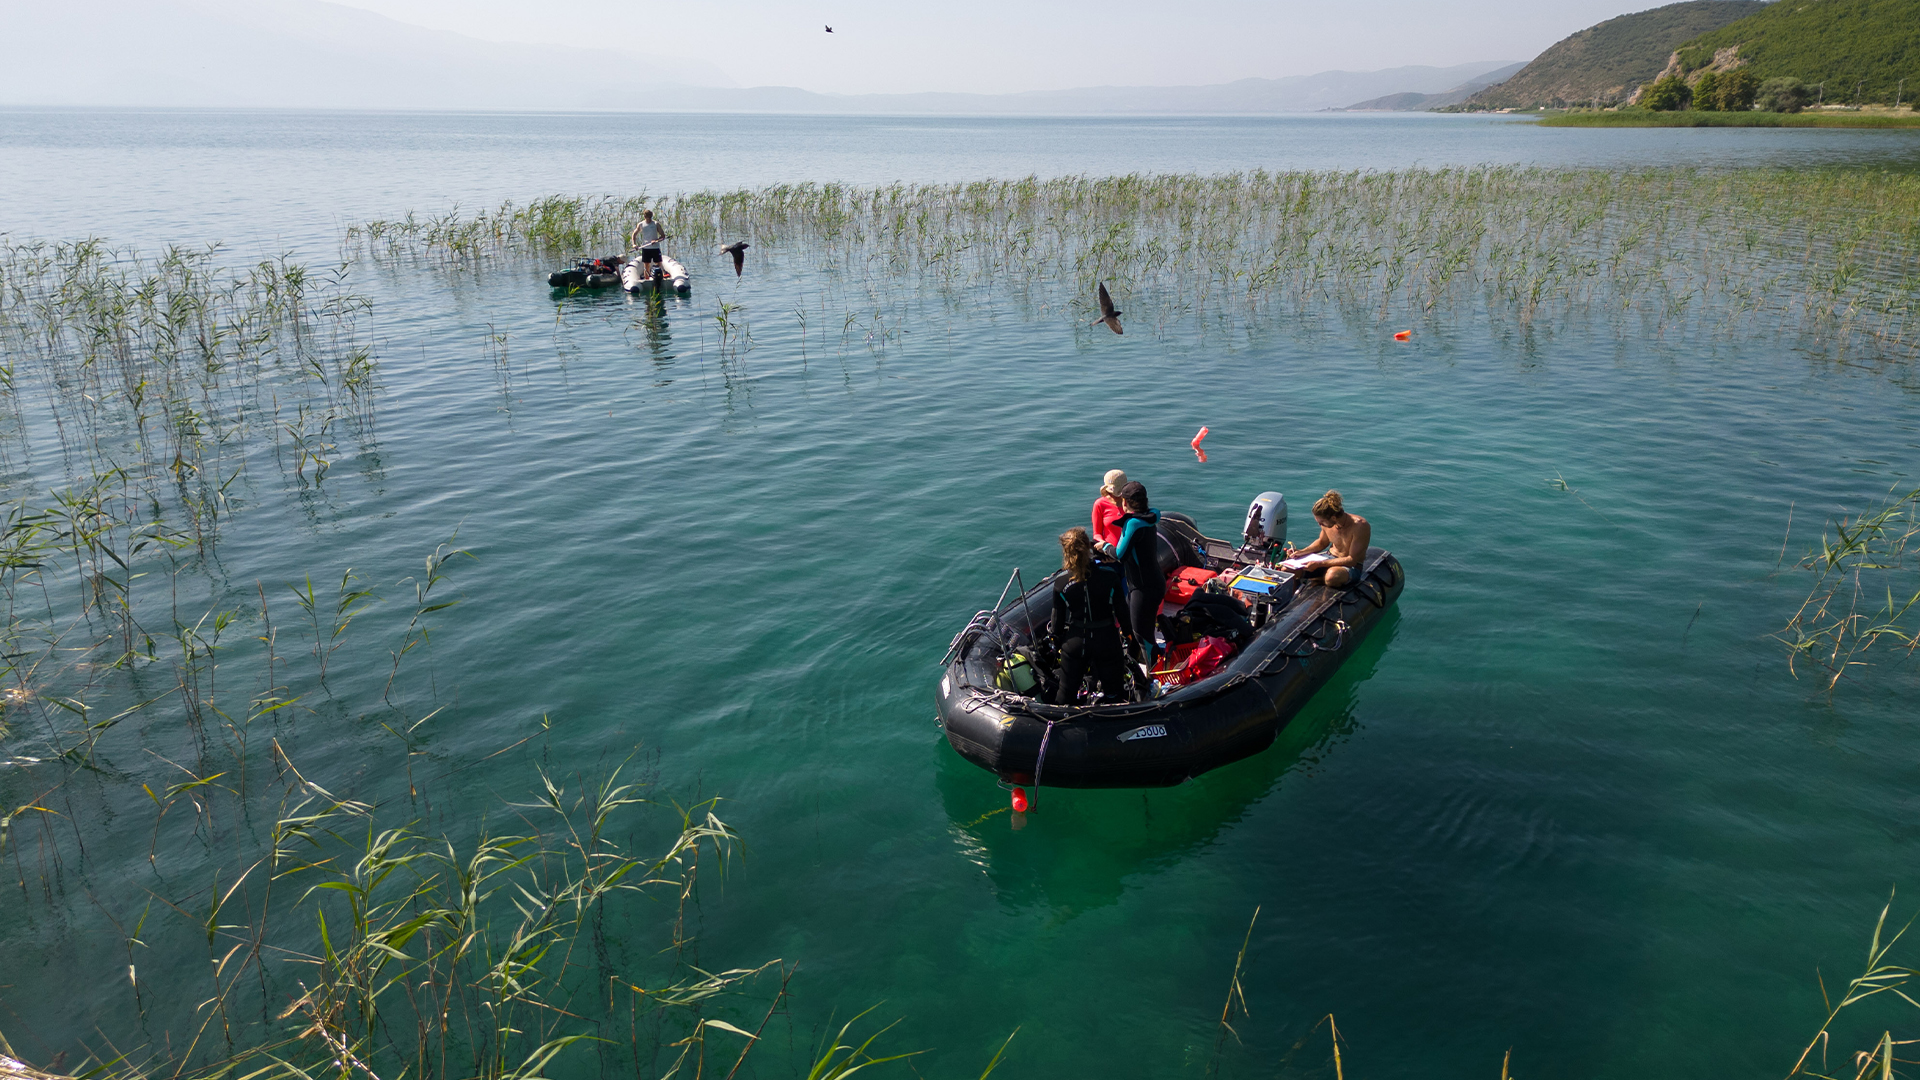 Виждаме надуваема черна лодка с изследователи в нея близо до брега на езеро.